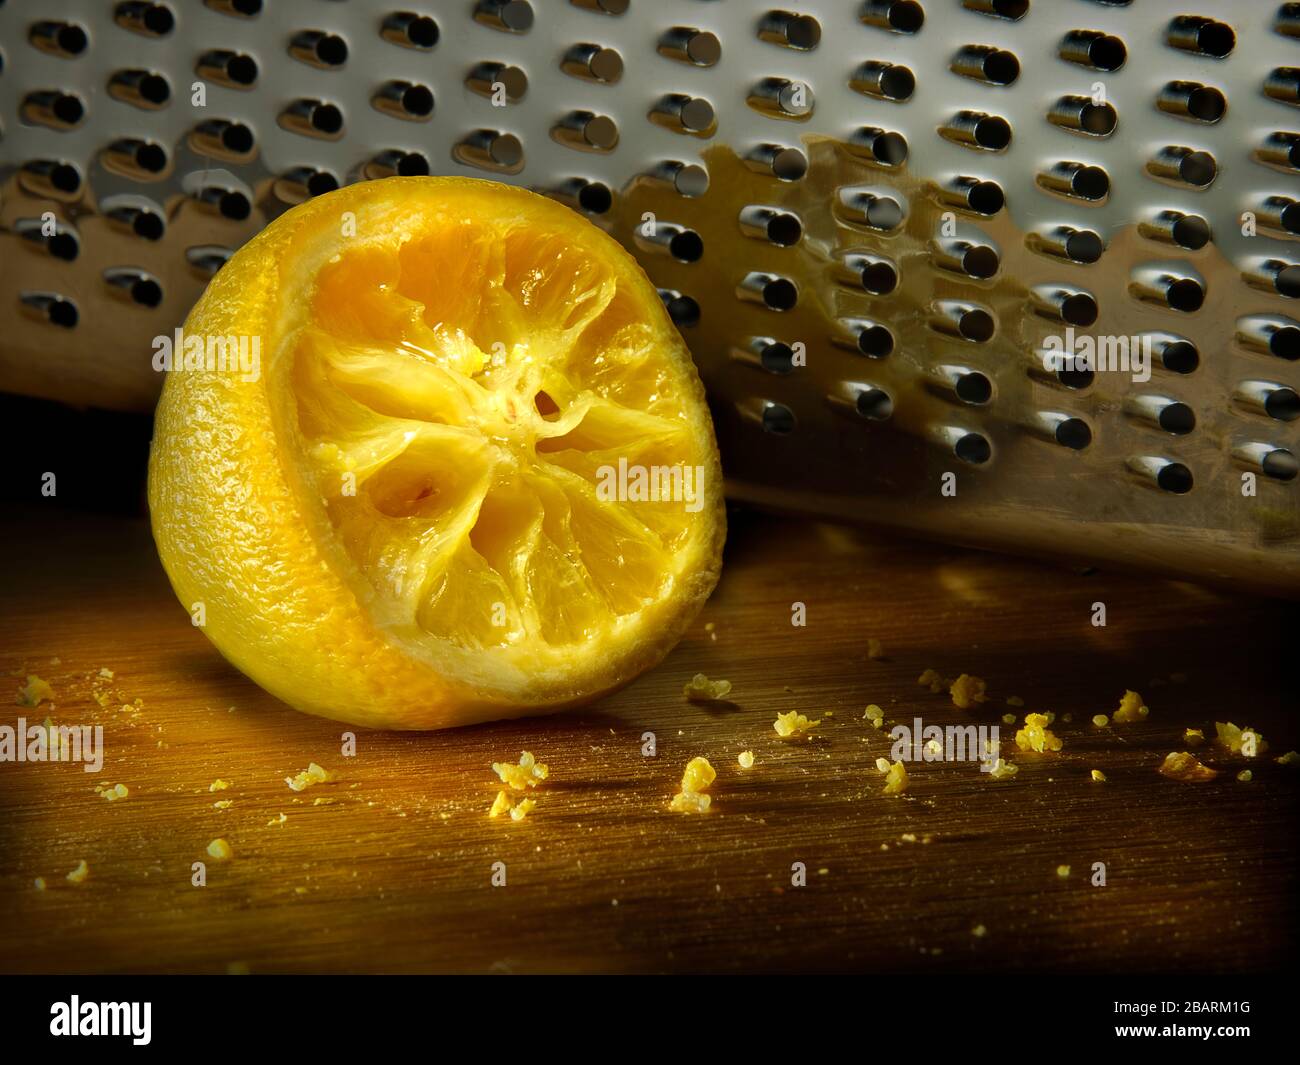 Grattugia al limone immagini e fotografie stock ad alta risoluzione - Alamy